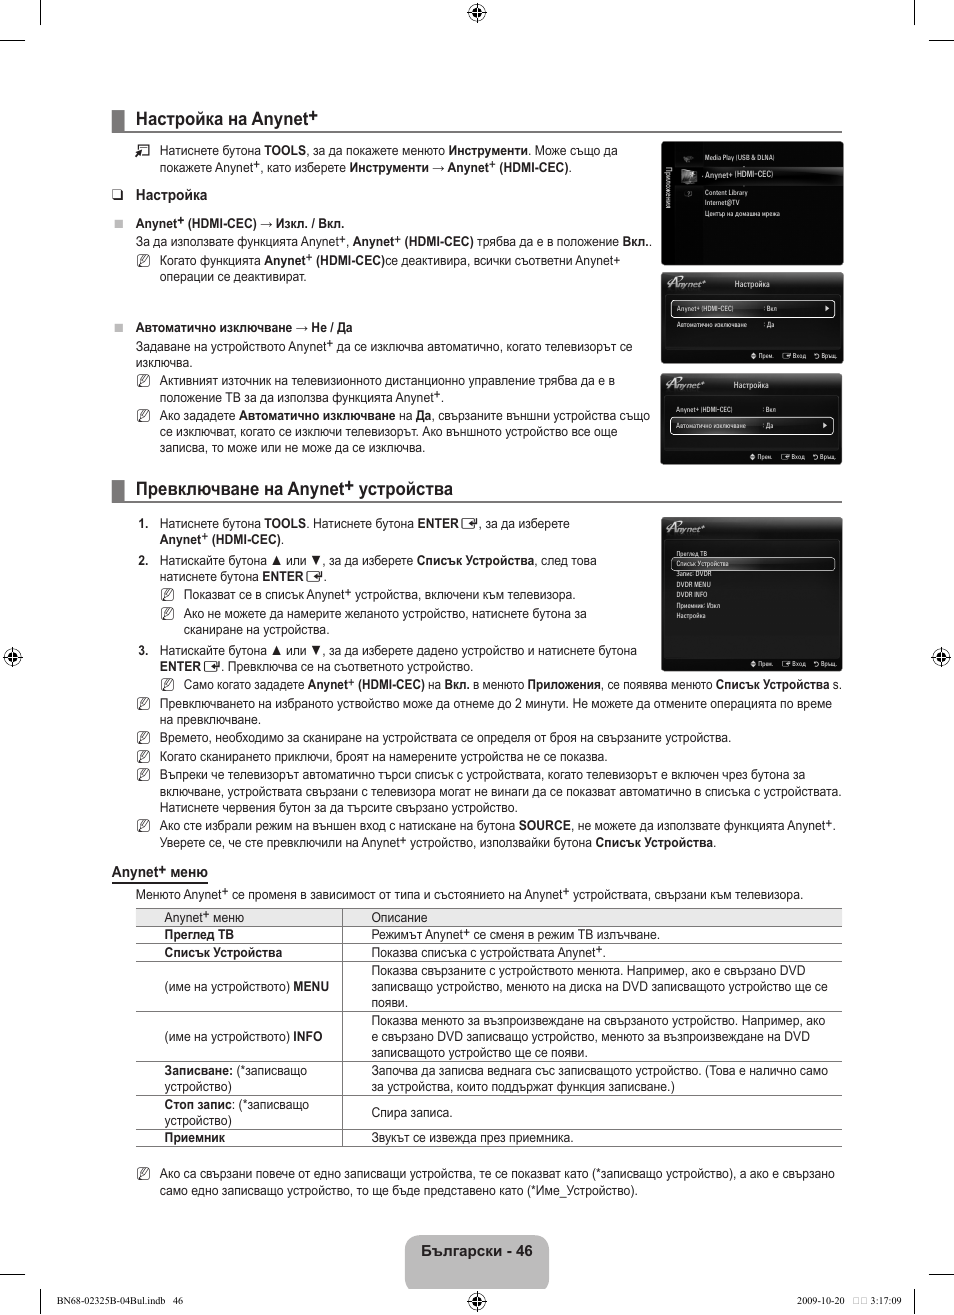 Настройка на anynet, Превключване на anynet+ устройства | Samsung LE37B650T2W User Manual | Page 324 / 680